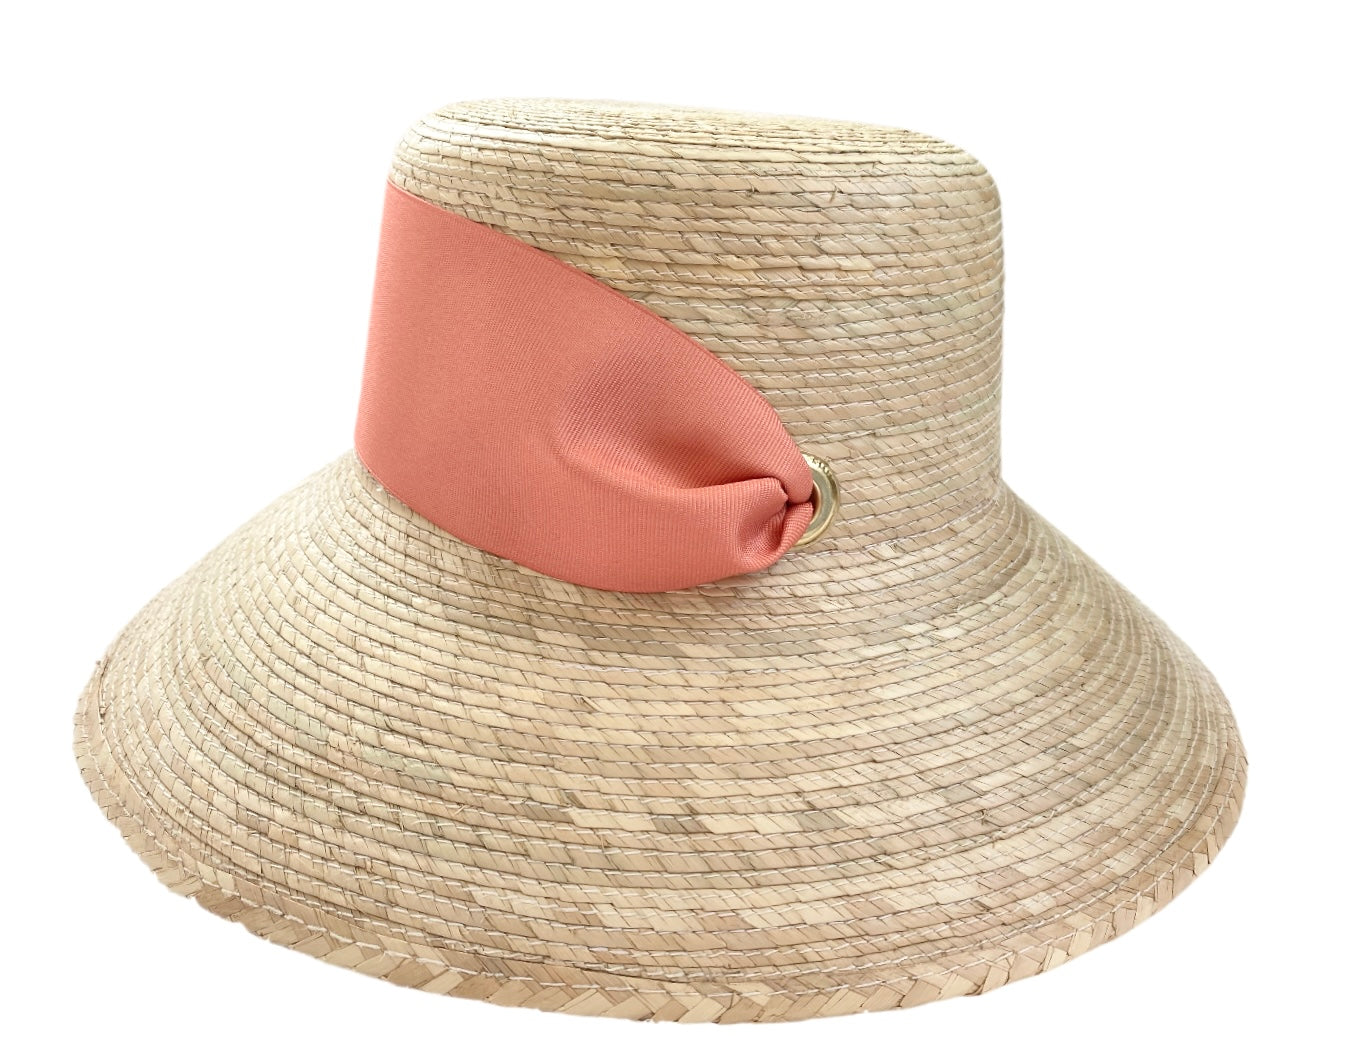 South Beach denim bucket hat in cream